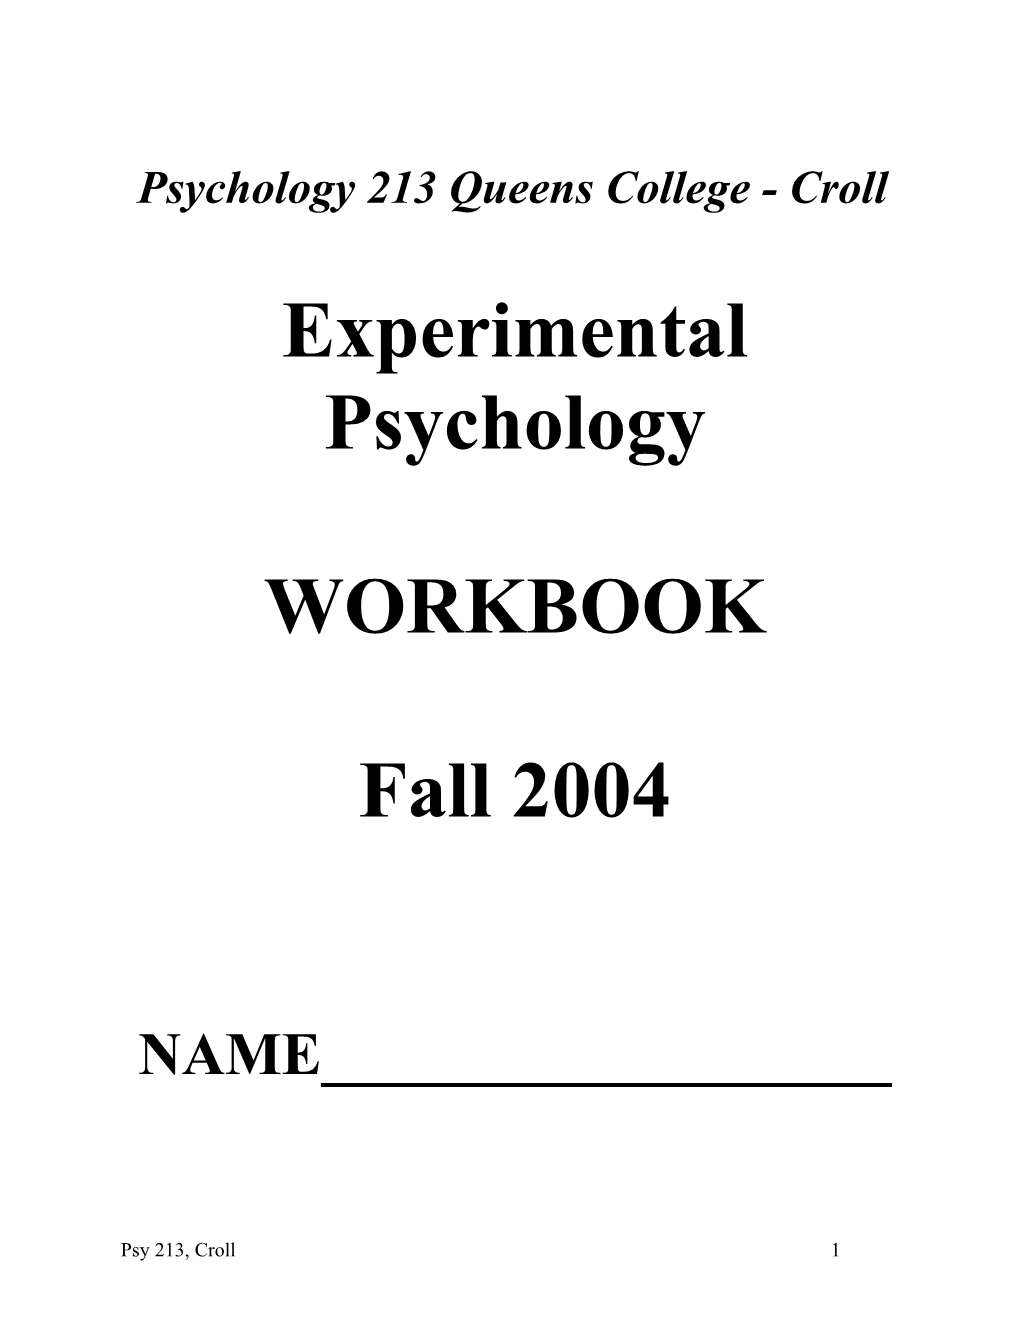 Psychology 213 Queenscollege - Croll